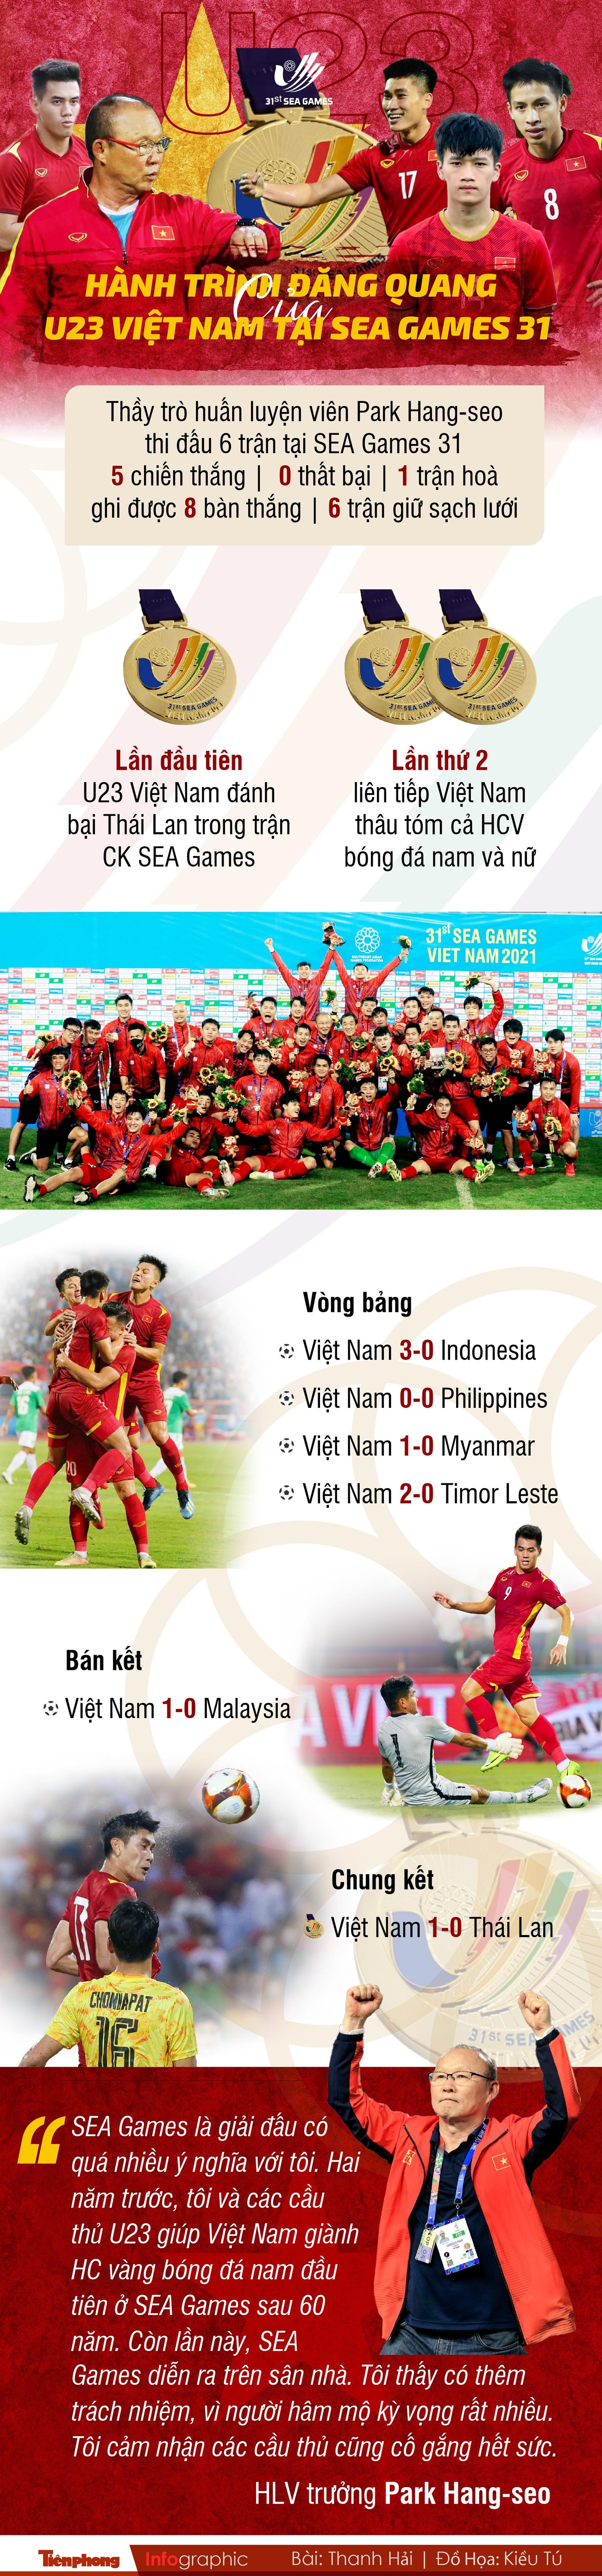 Hành trình đăng quang của U23 Việt Nam tại SEA Games 31 ảnh 1